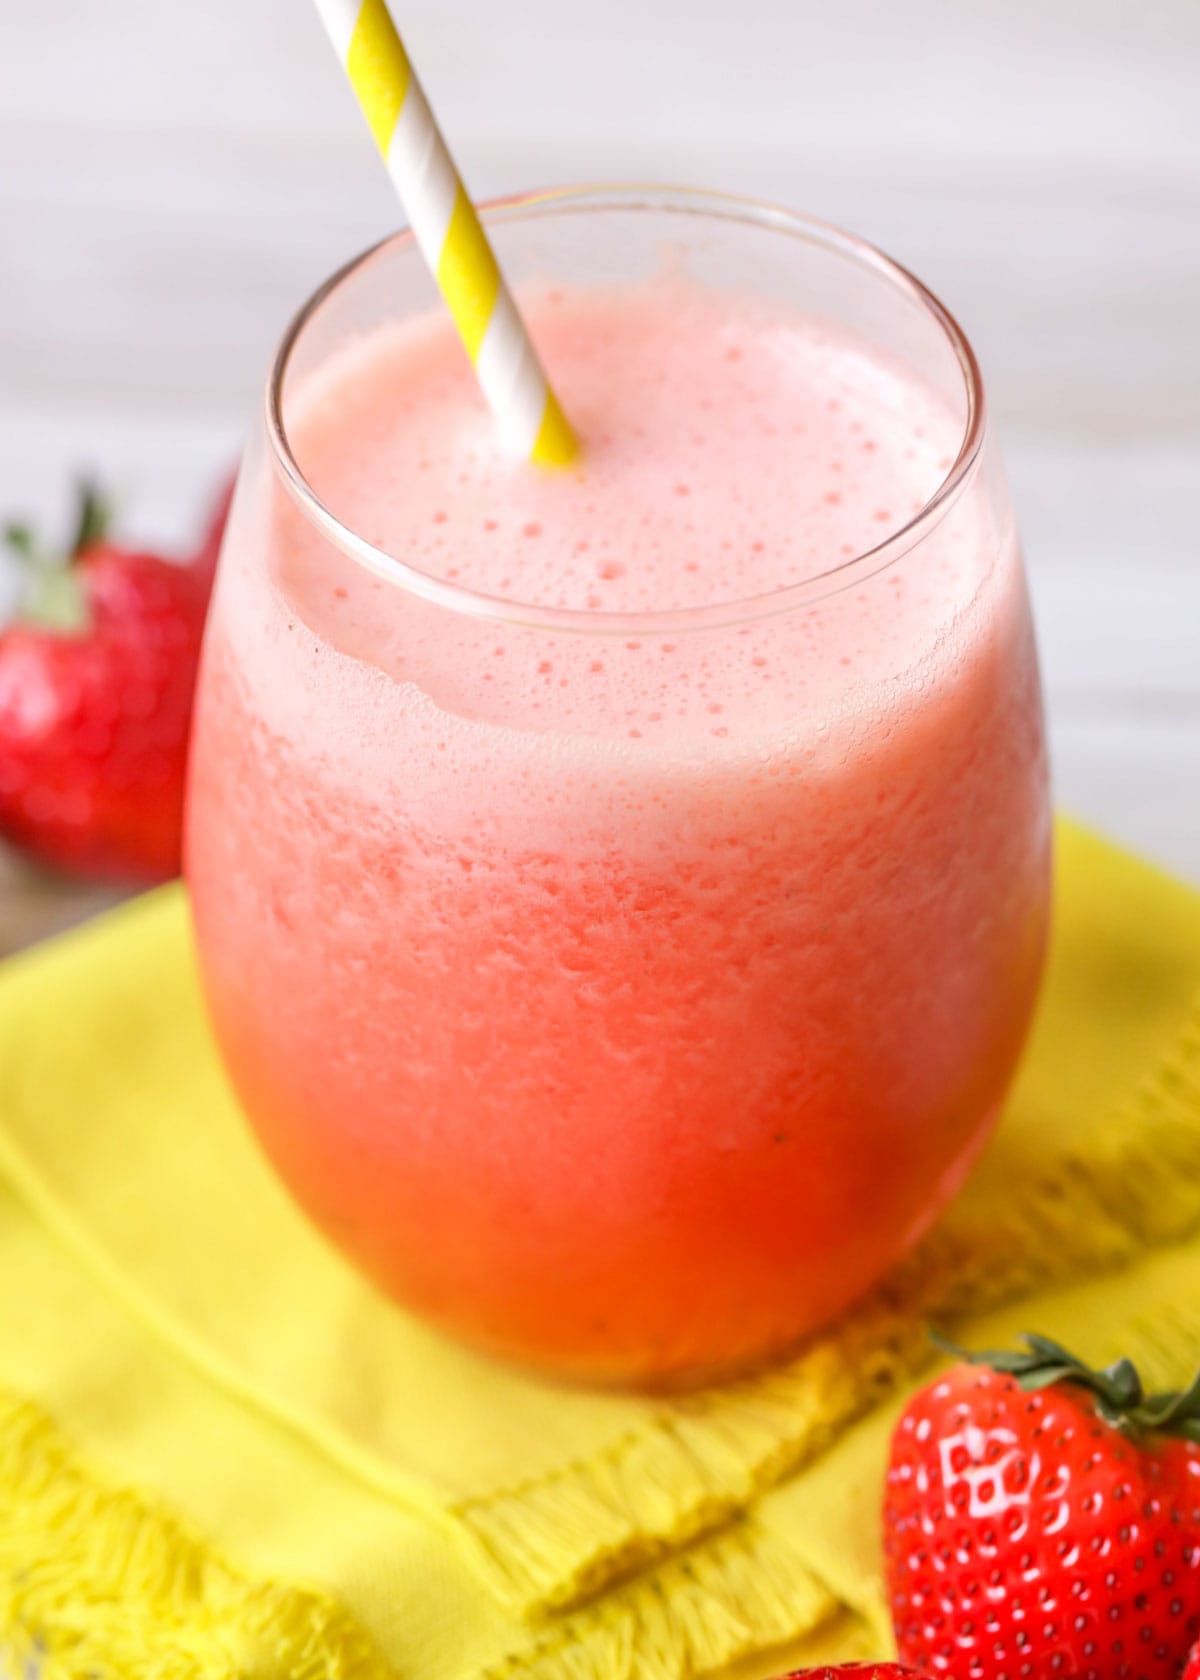 A glass full of frozen strawberry lemonade